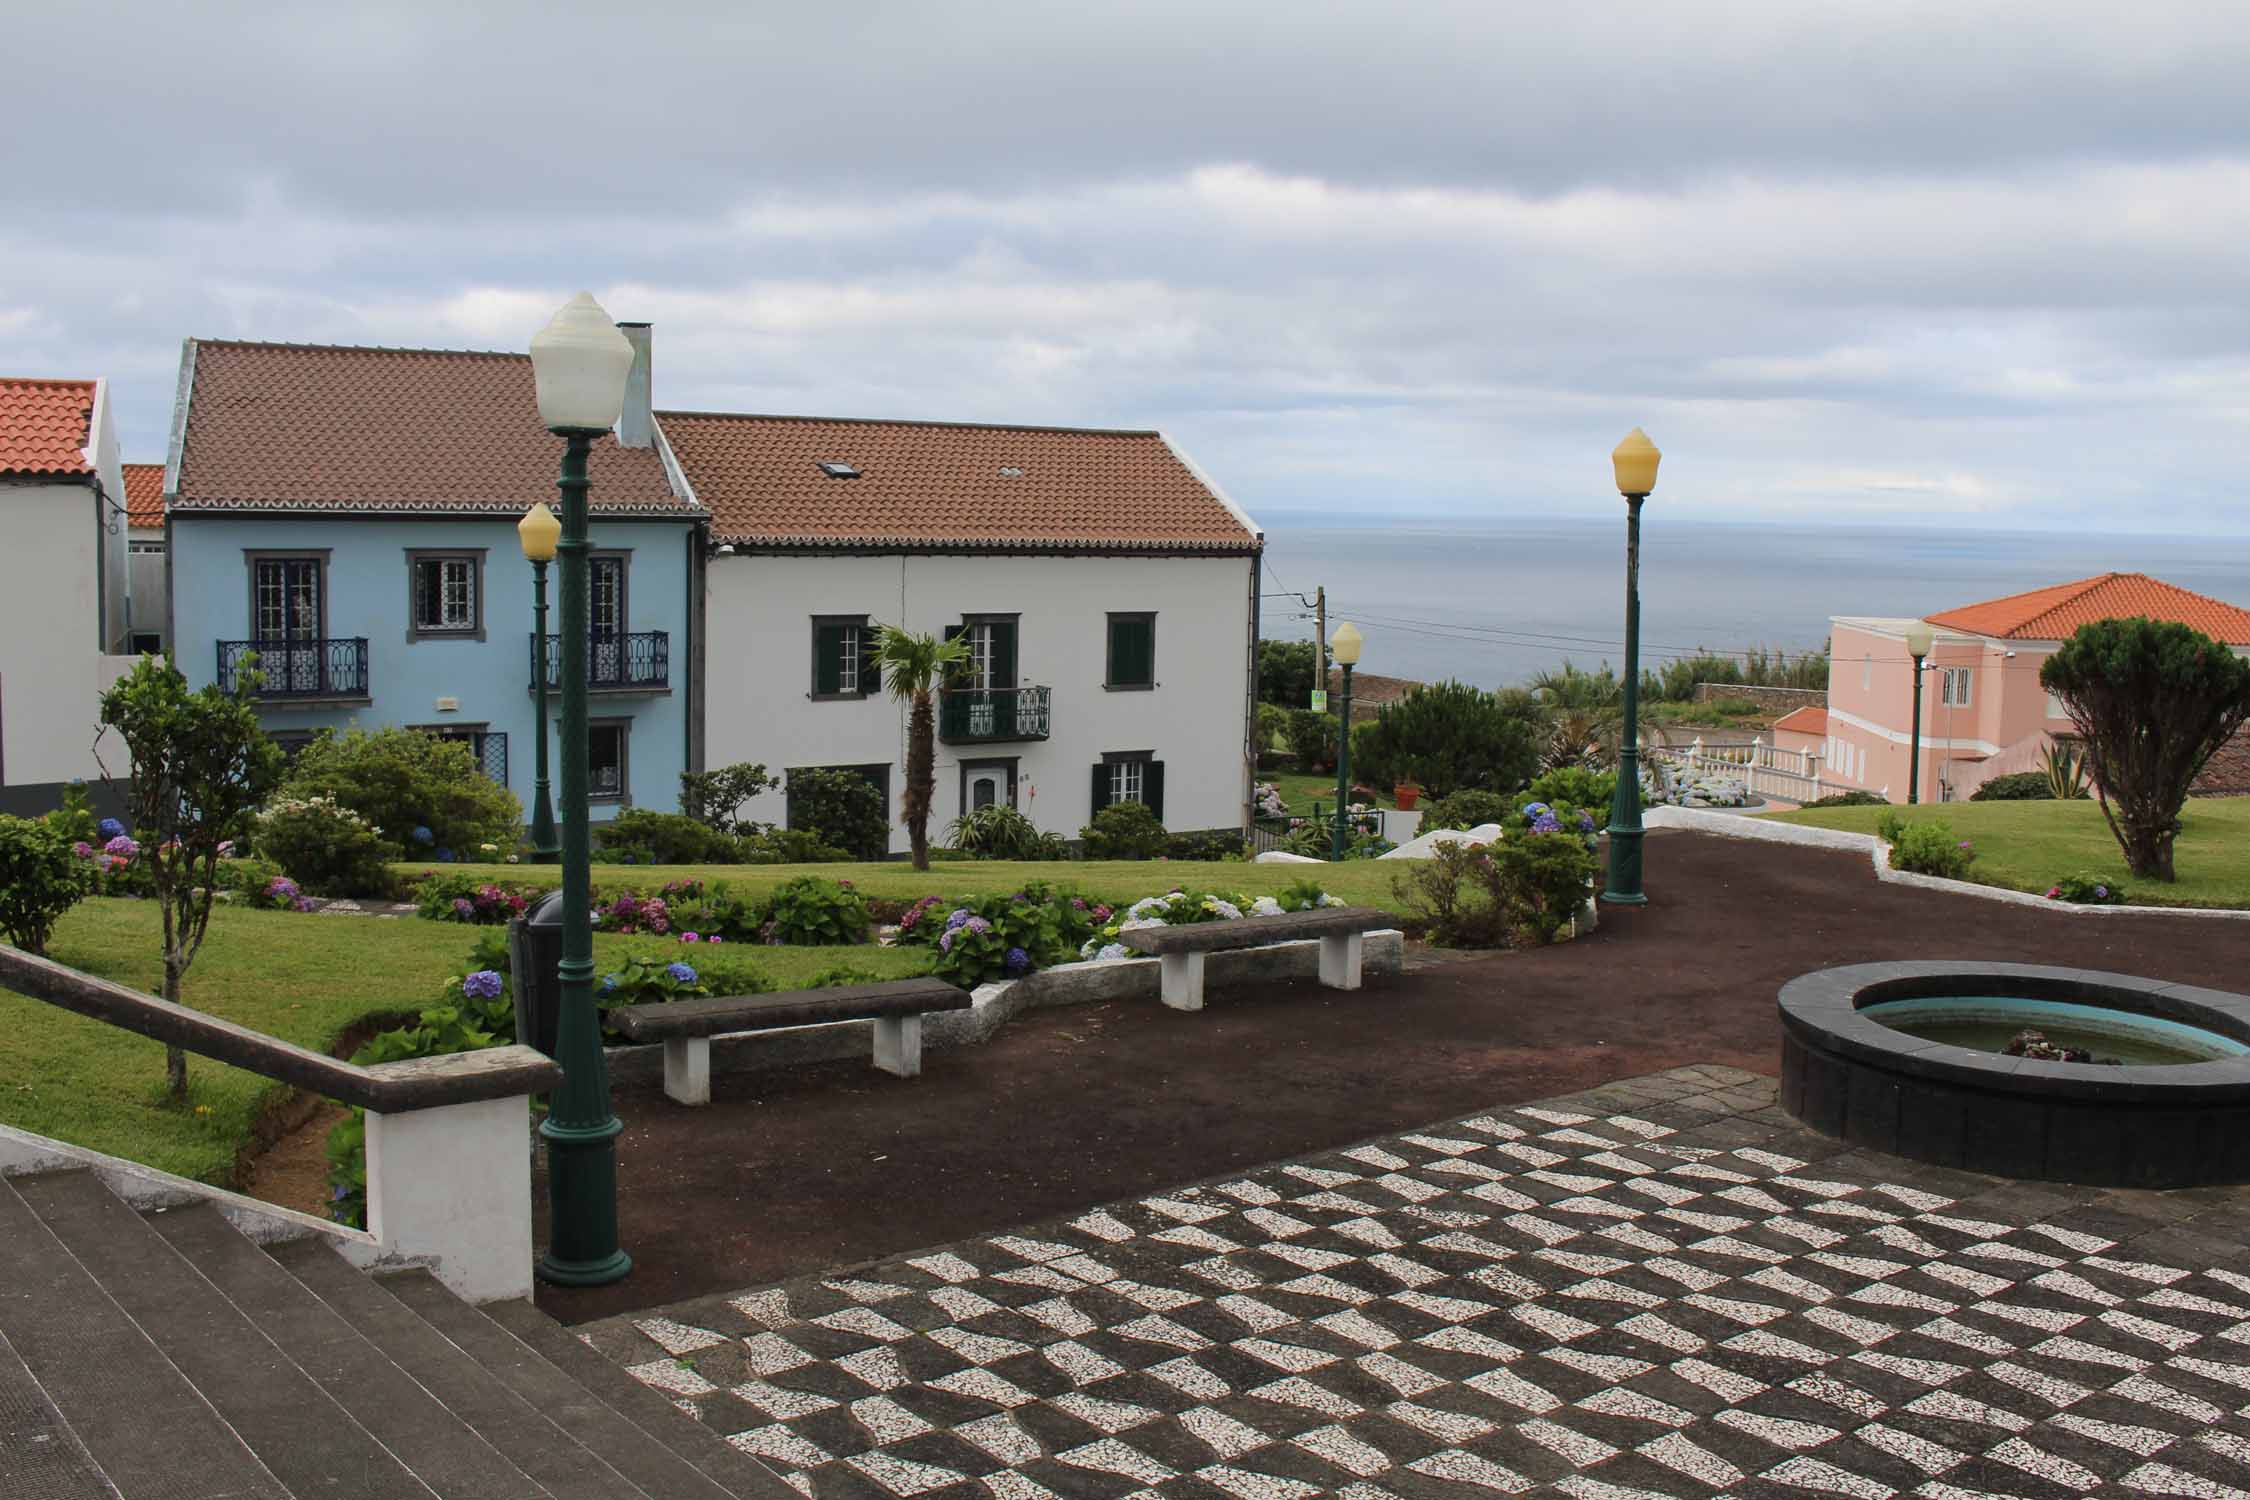 Le village de Relva sur l'île de São Miguel, Açores